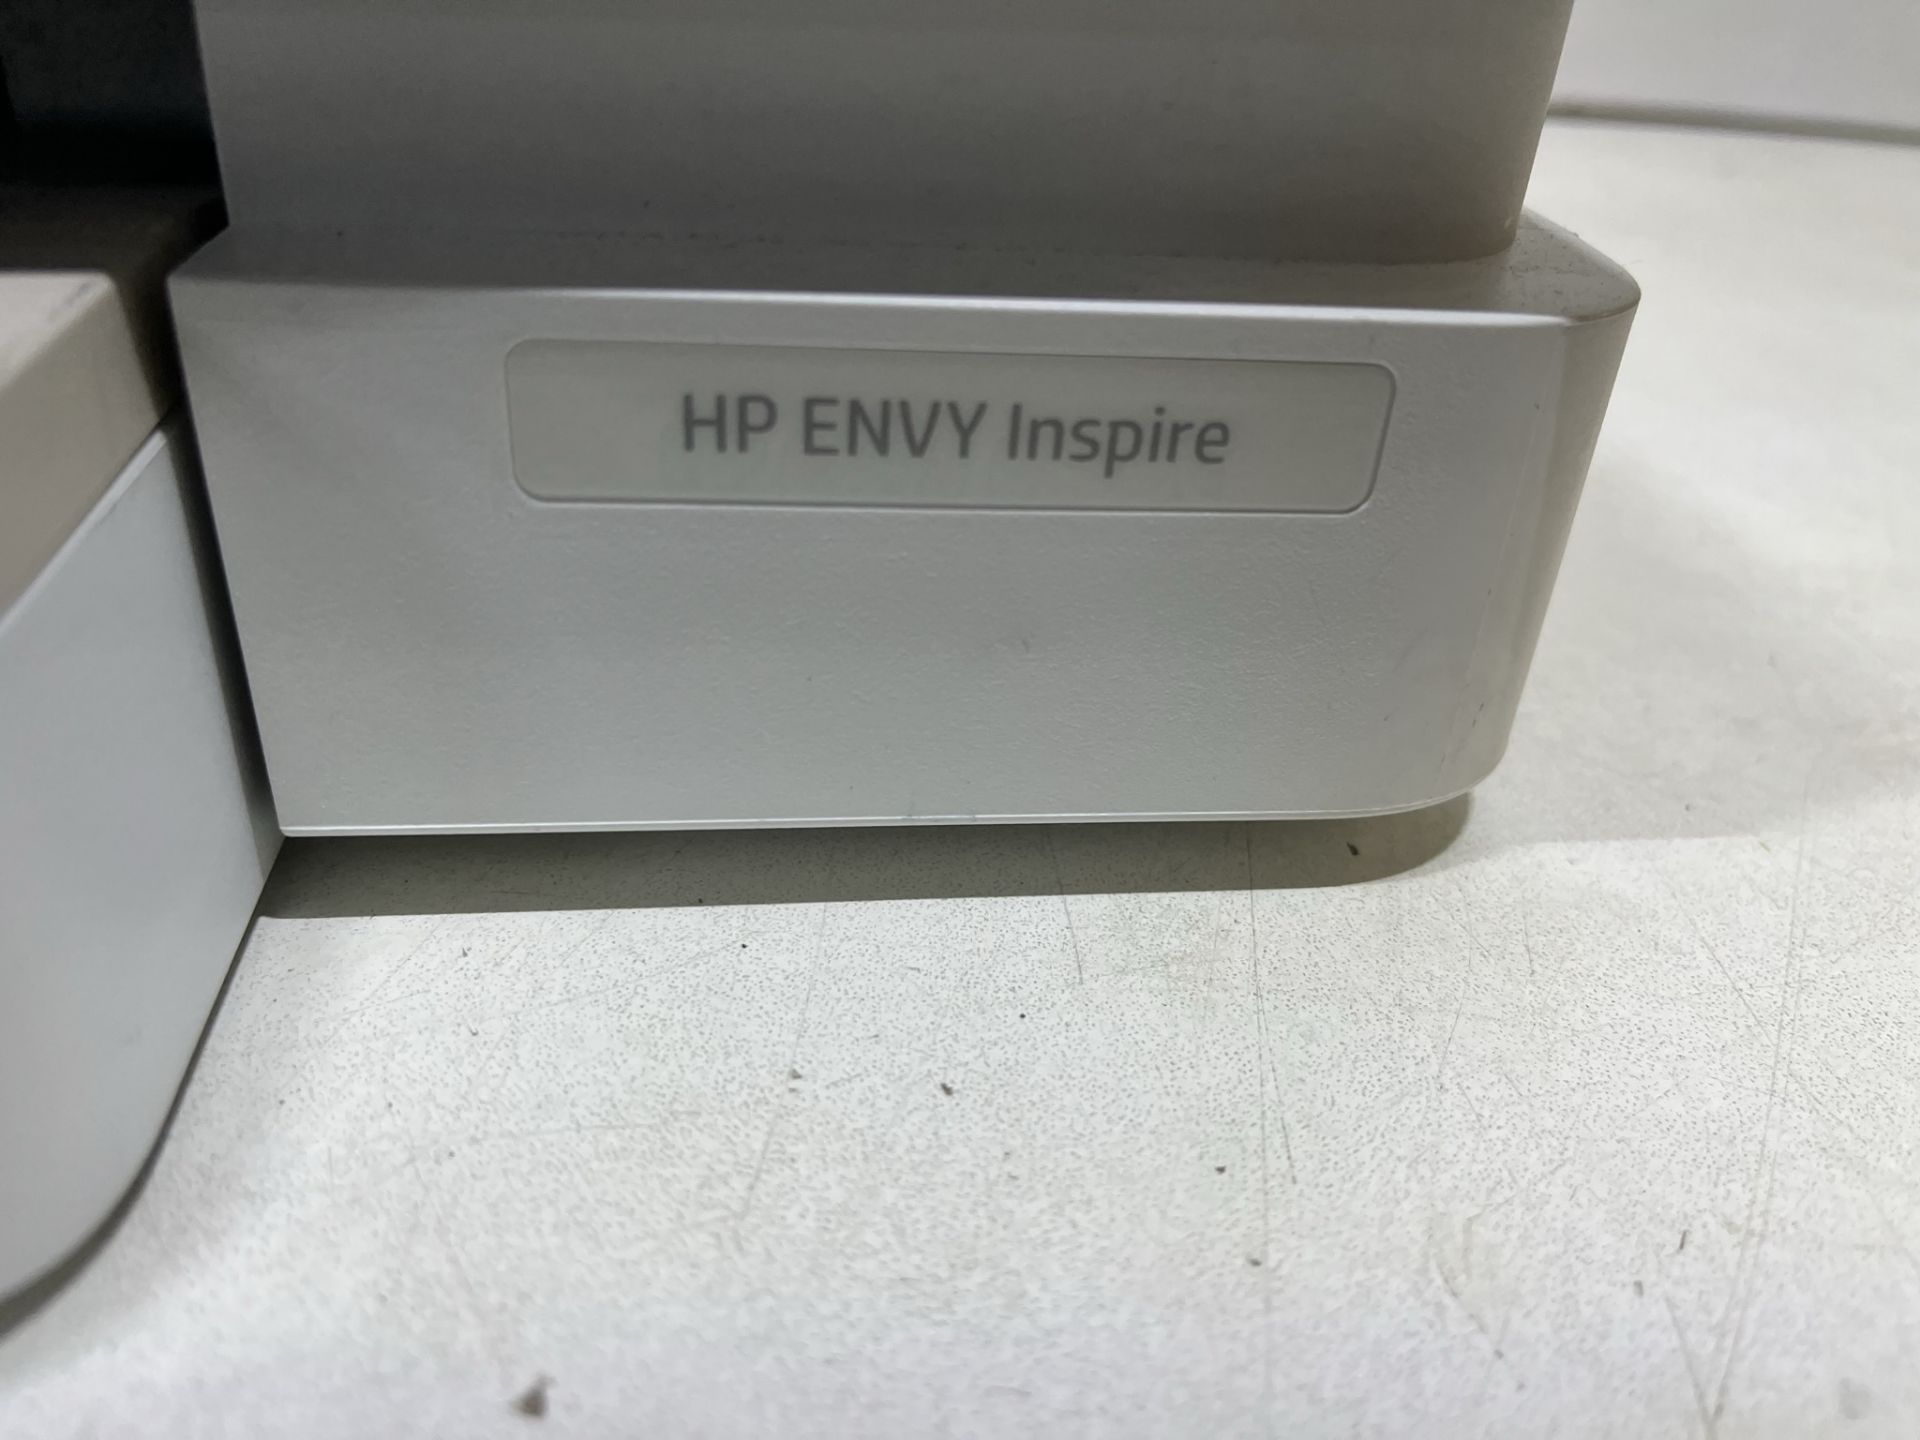 HP ENVY Inspire Multifunctional Inkjet Printer - Image 4 of 5